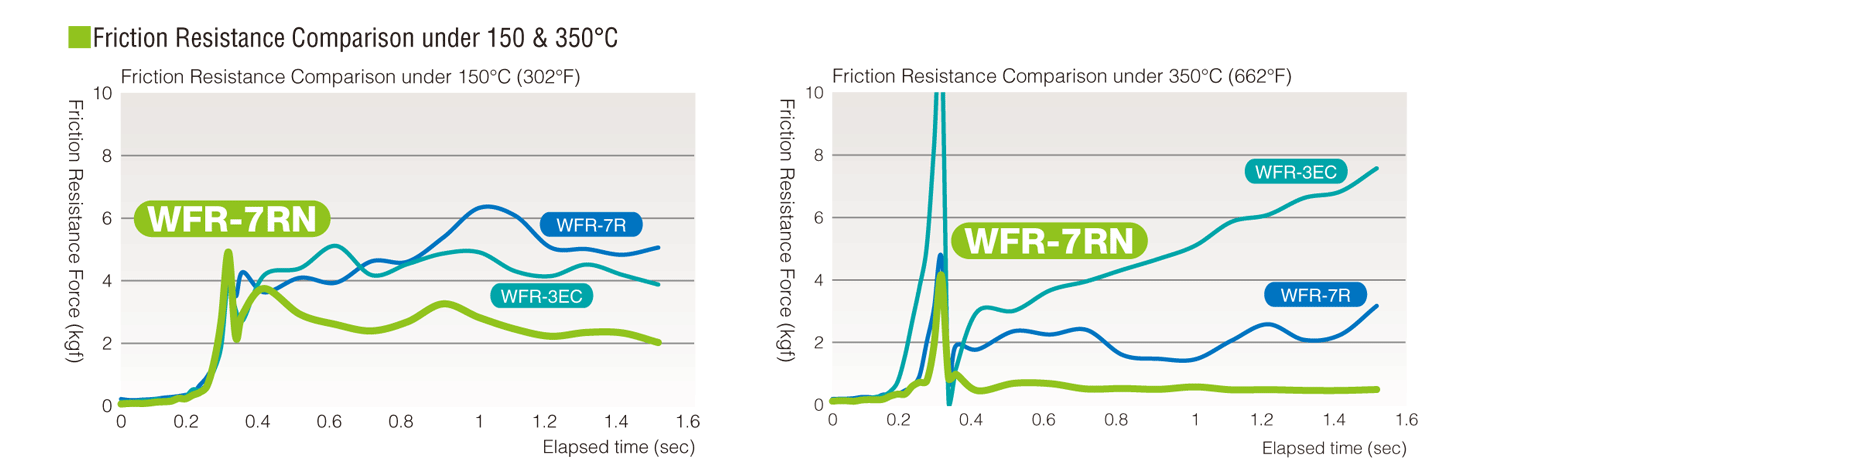 Friction resistance comparison under 150 & 350°C